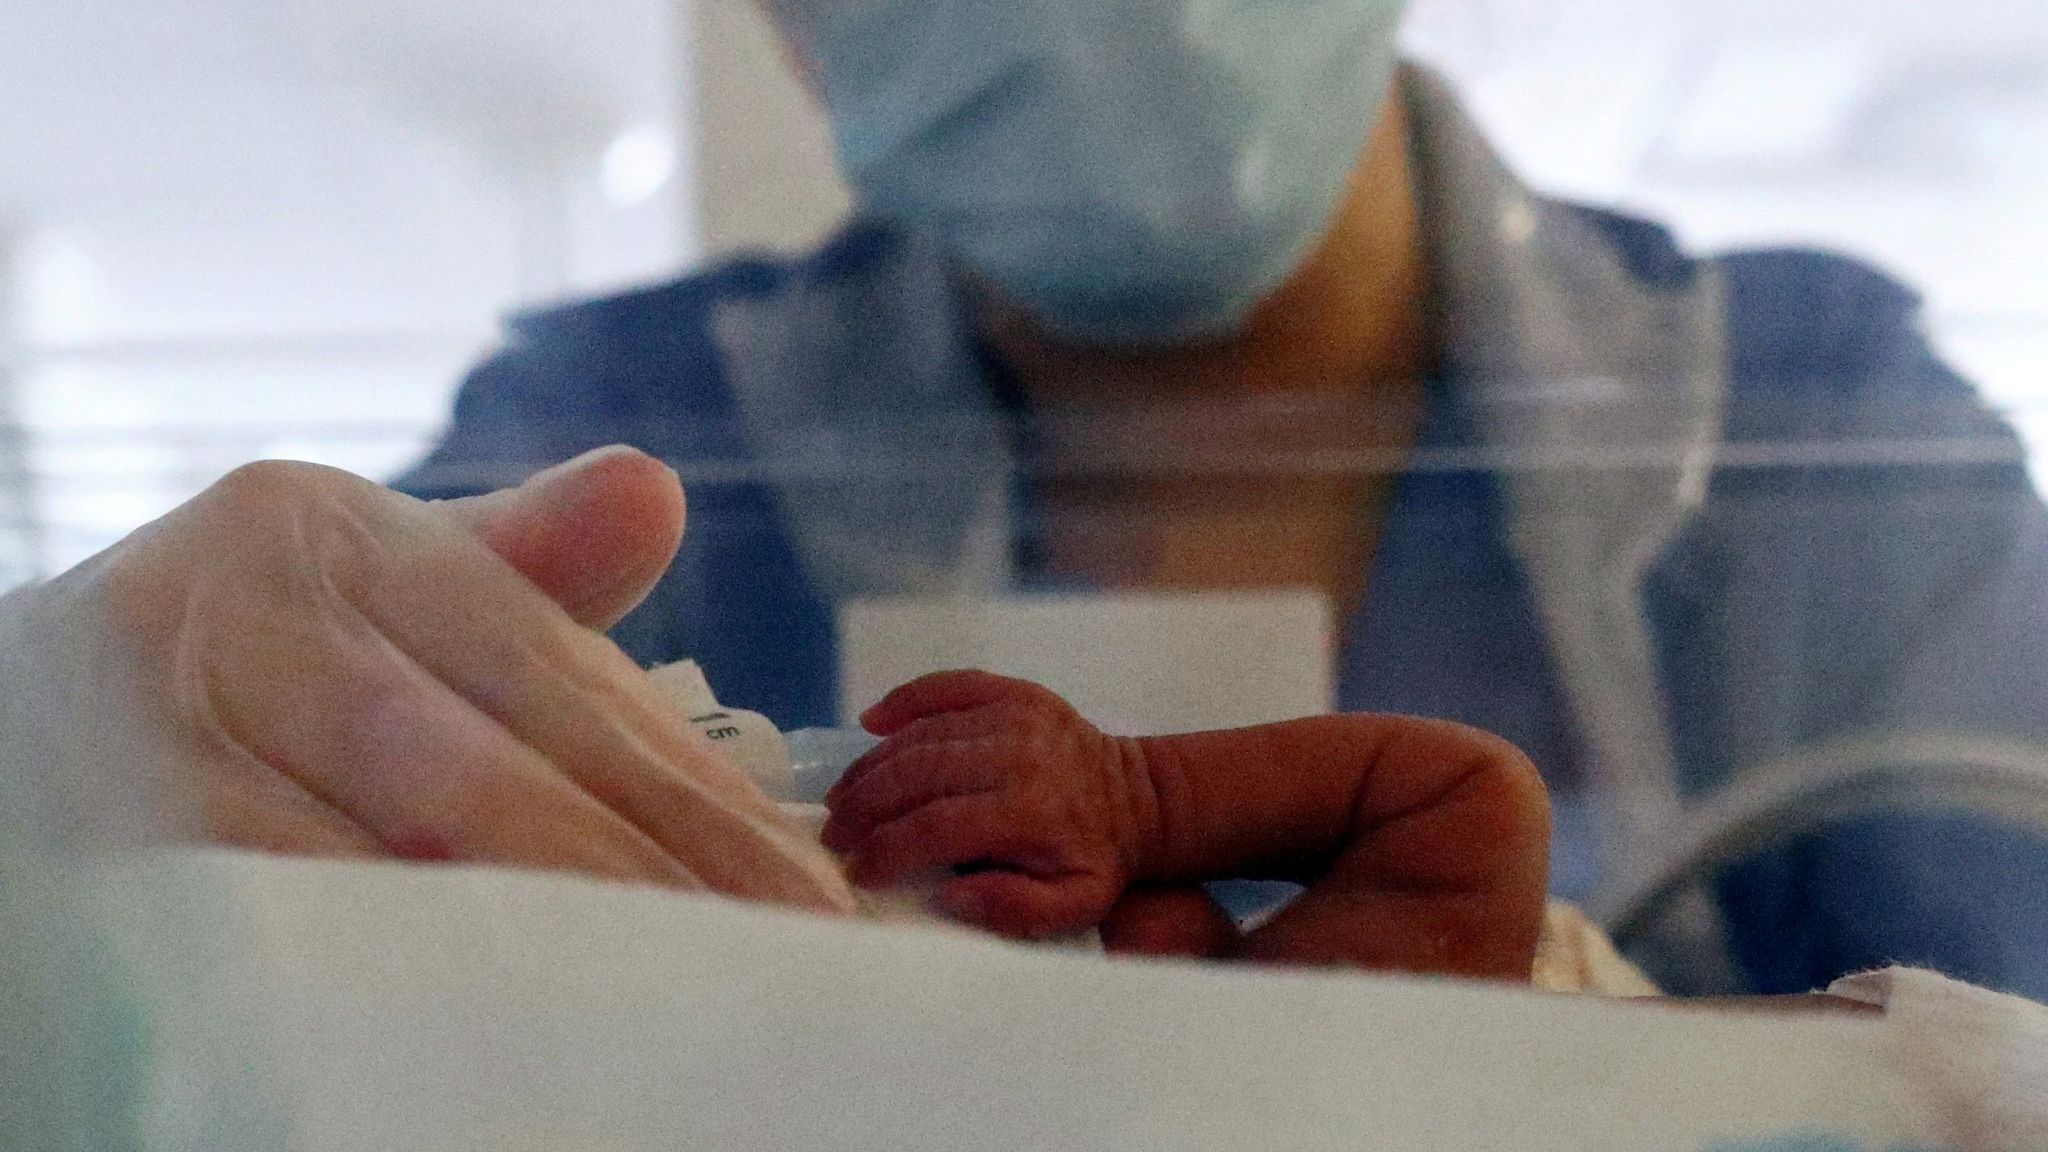 Раньше времени родилась. Новорожденный ребенок зараженный коронавирусом Краснодар. В Осетии родила 15 ребенка. Новорожденный ребёнок в реанимации Омск Беби бокс.